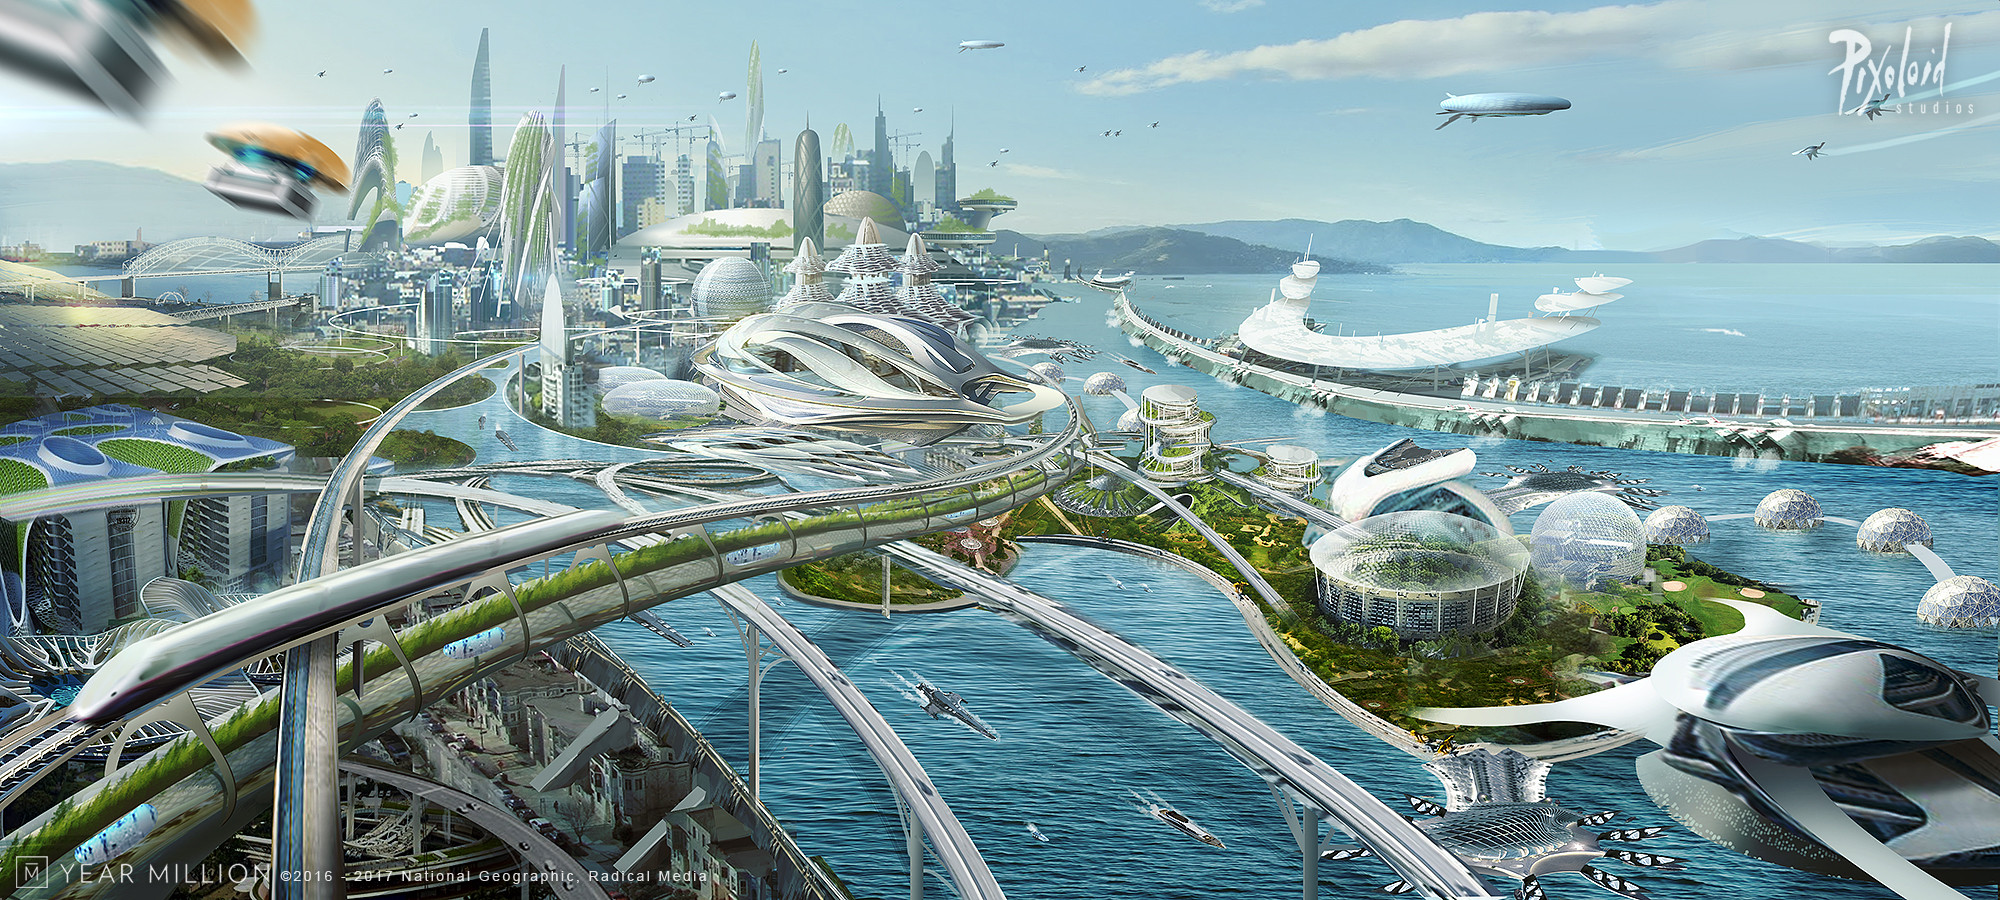 Как узнать как будет выглядеть будущий. Экогород будущего концепт Левиафан. Жак Фреско город будущего. Экогород Донгтан.